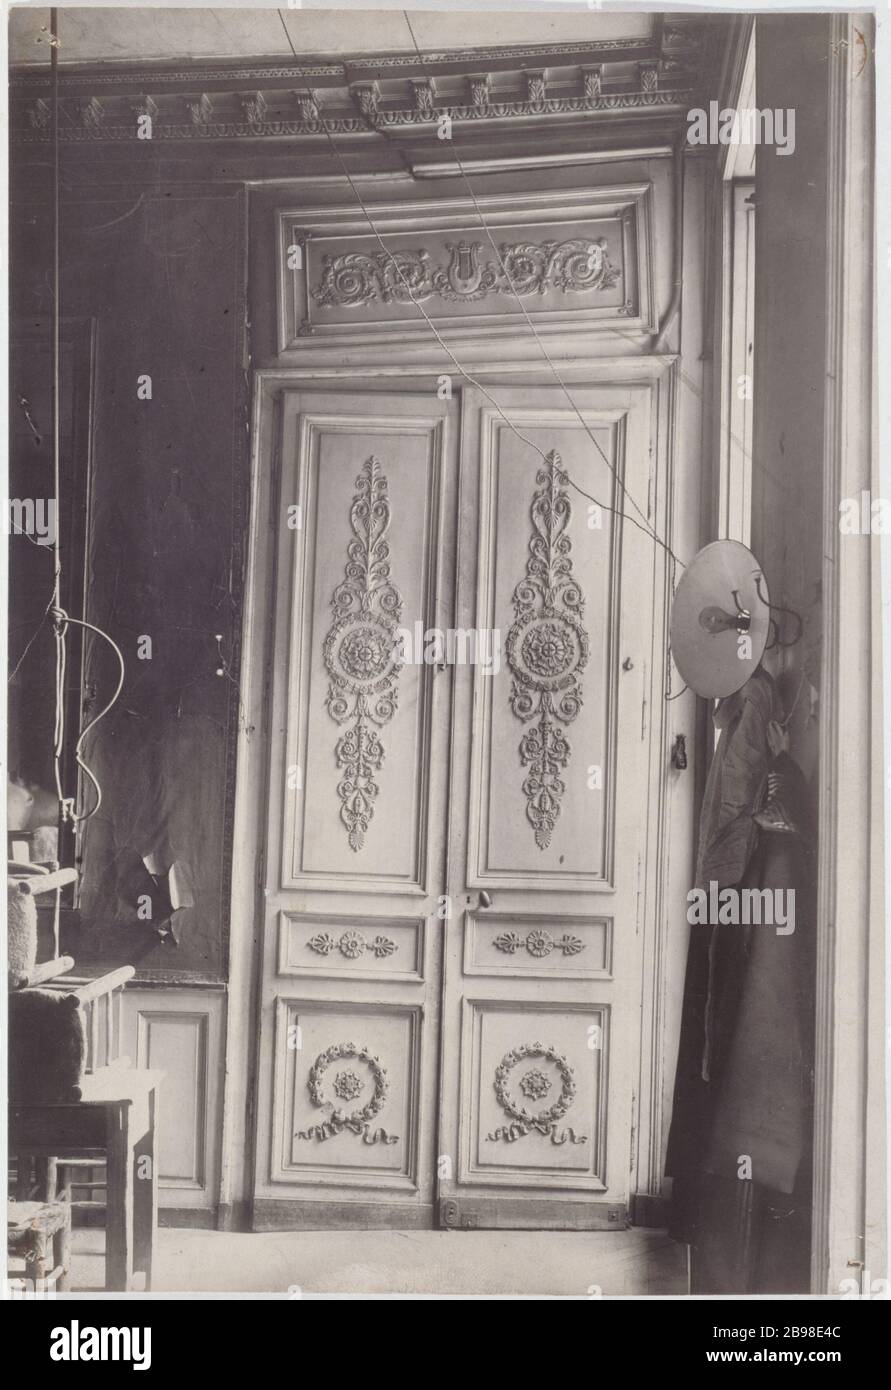 3 RUE SEGUIER 3, rue Séguier : dessus de porte de style Louis XVI, 1921.  Paris (VIème arr.). Photographie de Charles Lansiaux (1855-1939), 1921.  Paris, musée Carnavalet Stock Photo - Alamy